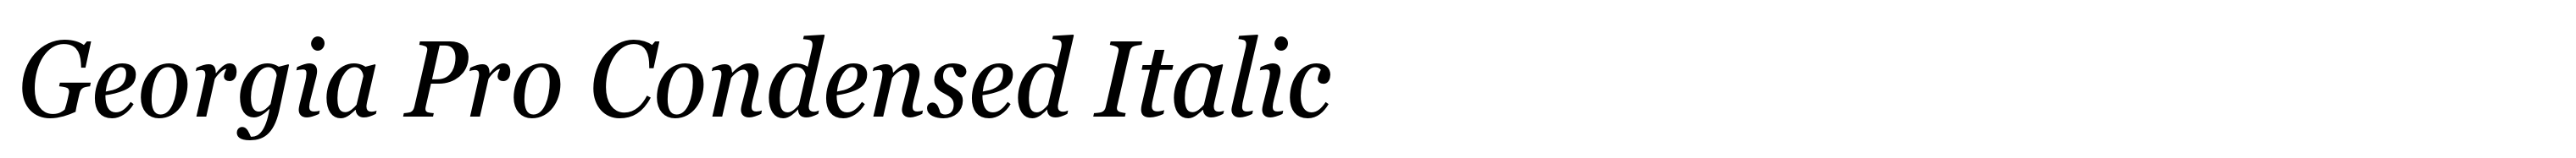 Georgia Pro Condensed Italic